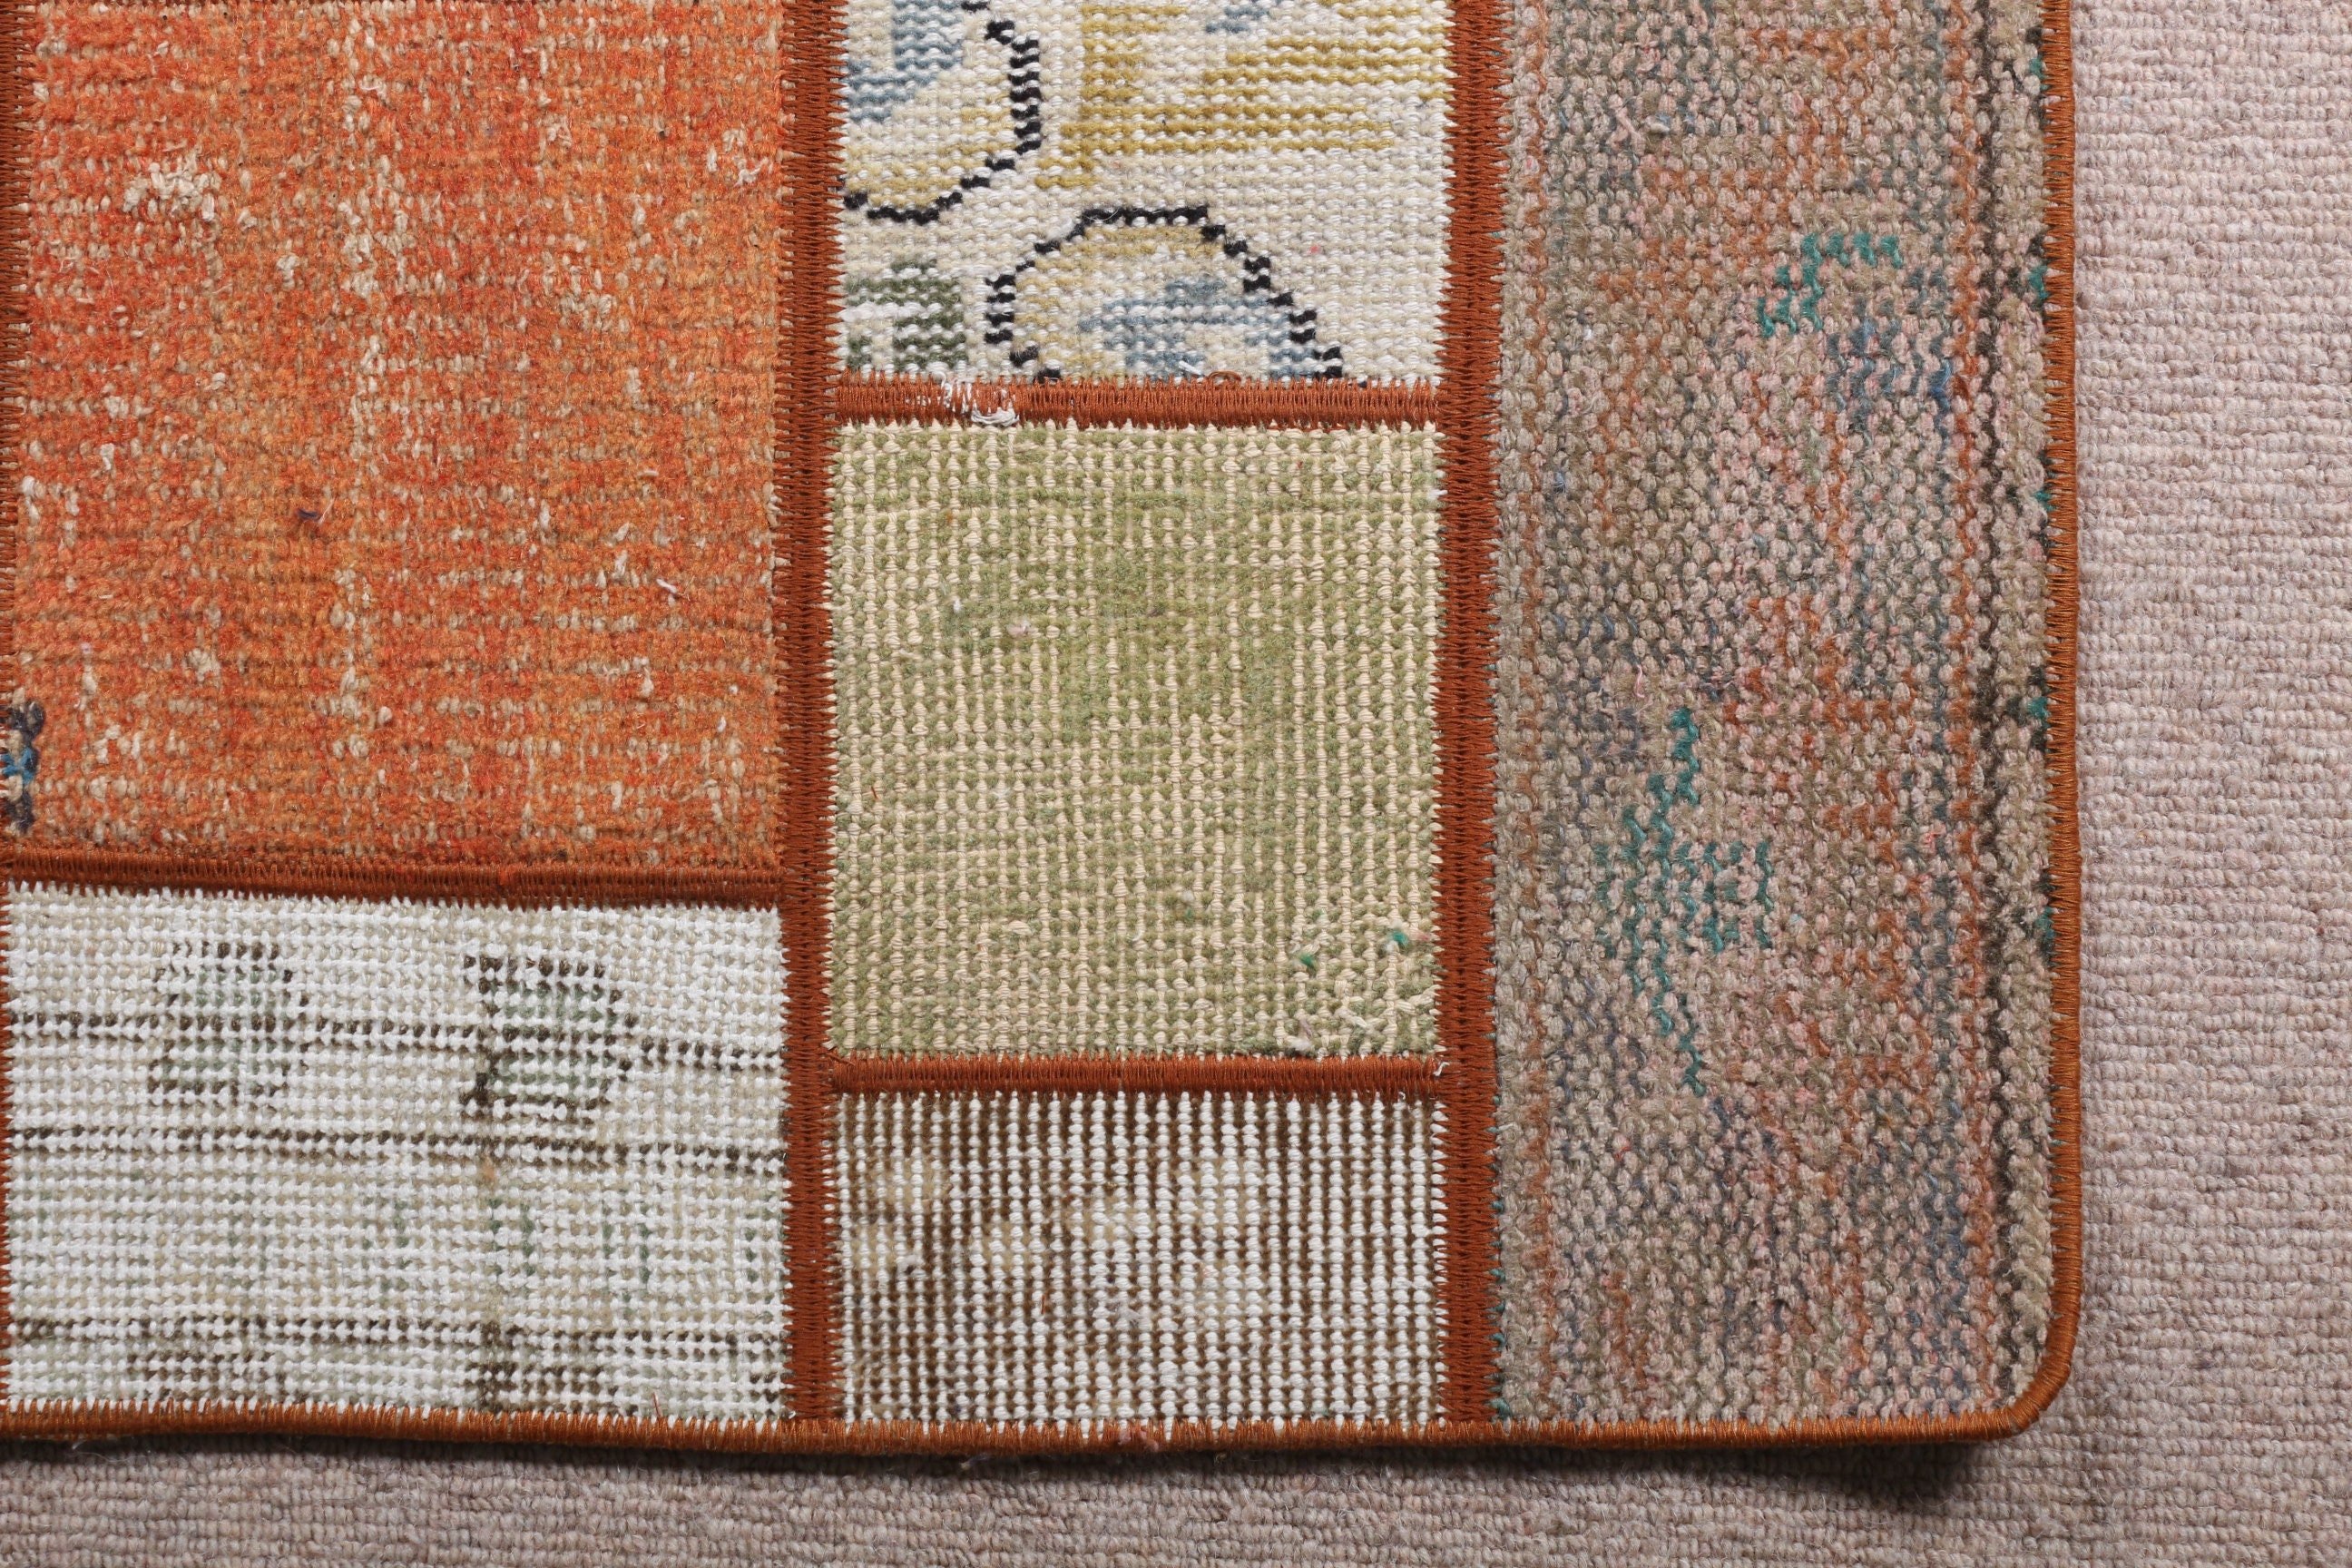 Turkish Rugs, Floor Rug, Door Mat Rug, Rugs for Wall Hanging, 1.8x3 ft Small Rug, Cool Rugs, Beige Wool Rugs, Vintage Rug, Nursery Rug